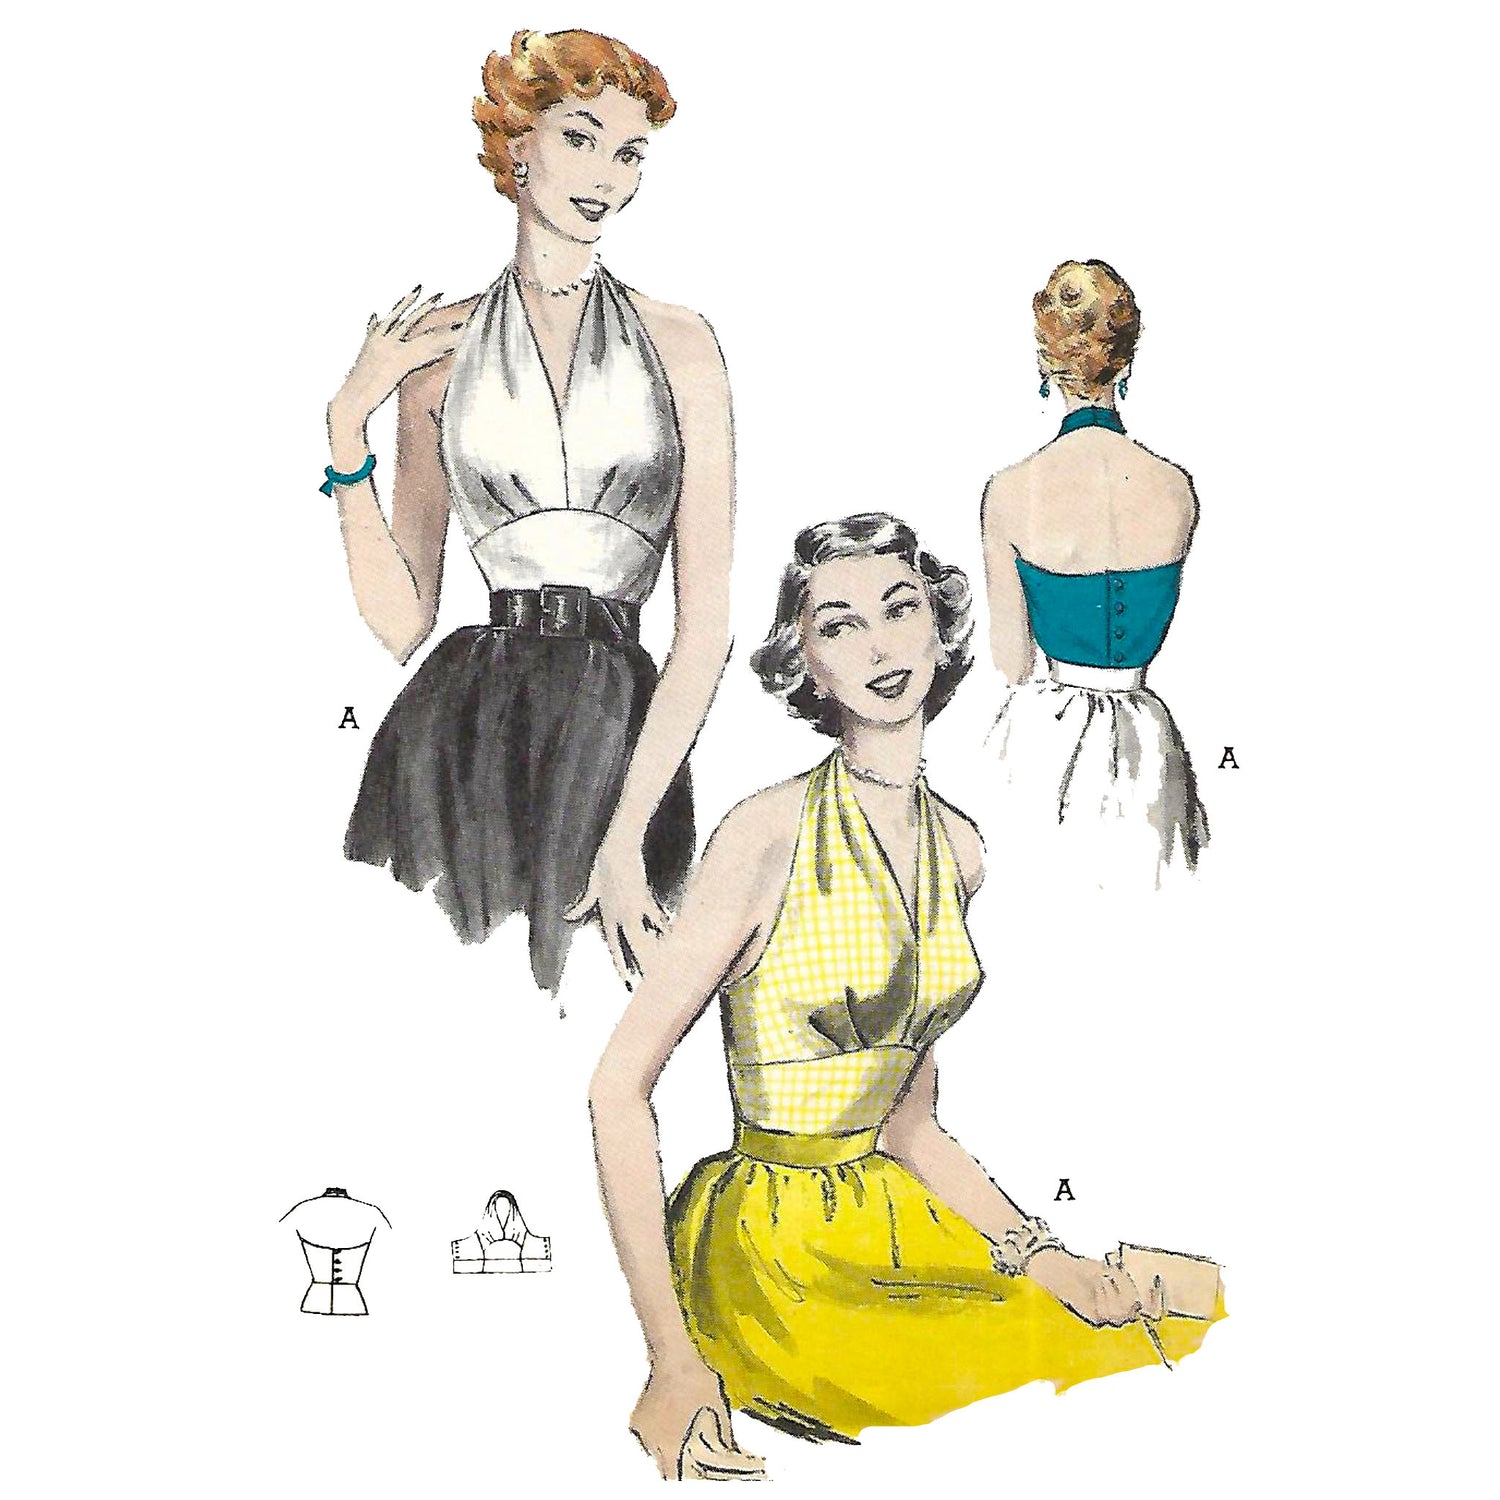 Halter Top Bathing Suit Top Sewing Pattern PDF Digital Download